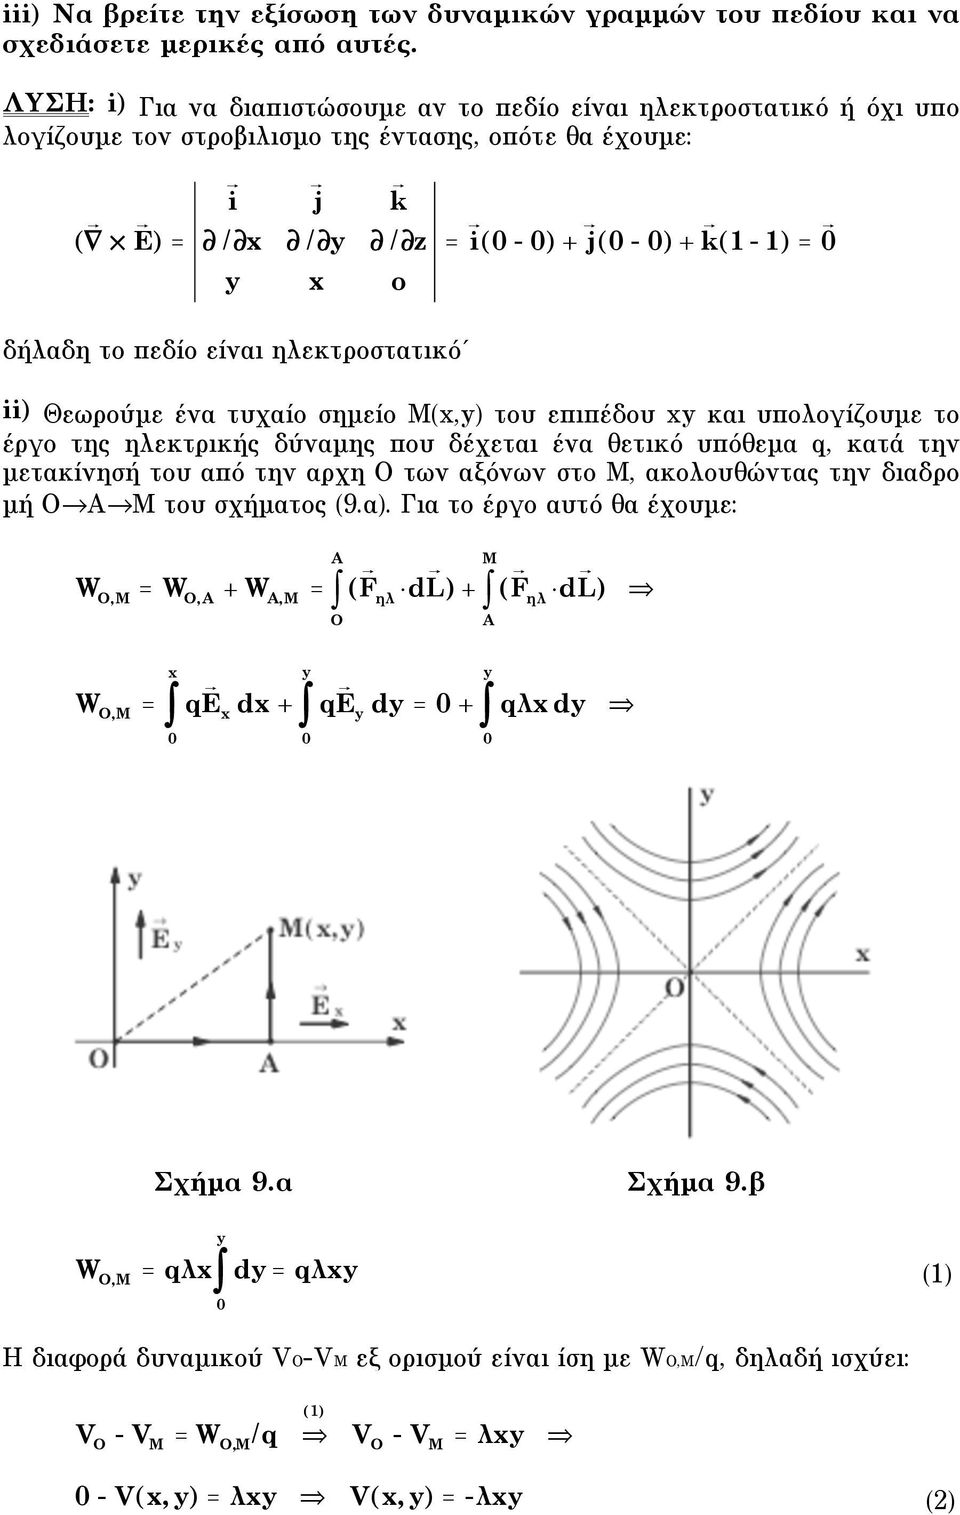 ηλεκτροστατικό = i ( - ) + j ( - ) + k (1-1) = ii) Θεωρούµε ένα τυχαίο σηµείο M(x,y) του επιπέδου xy και υπολογίζουµε το έργο της ηλεκτρικής δύναµης που δέχεται ένα θετικό υπόθεµα q, κατά την